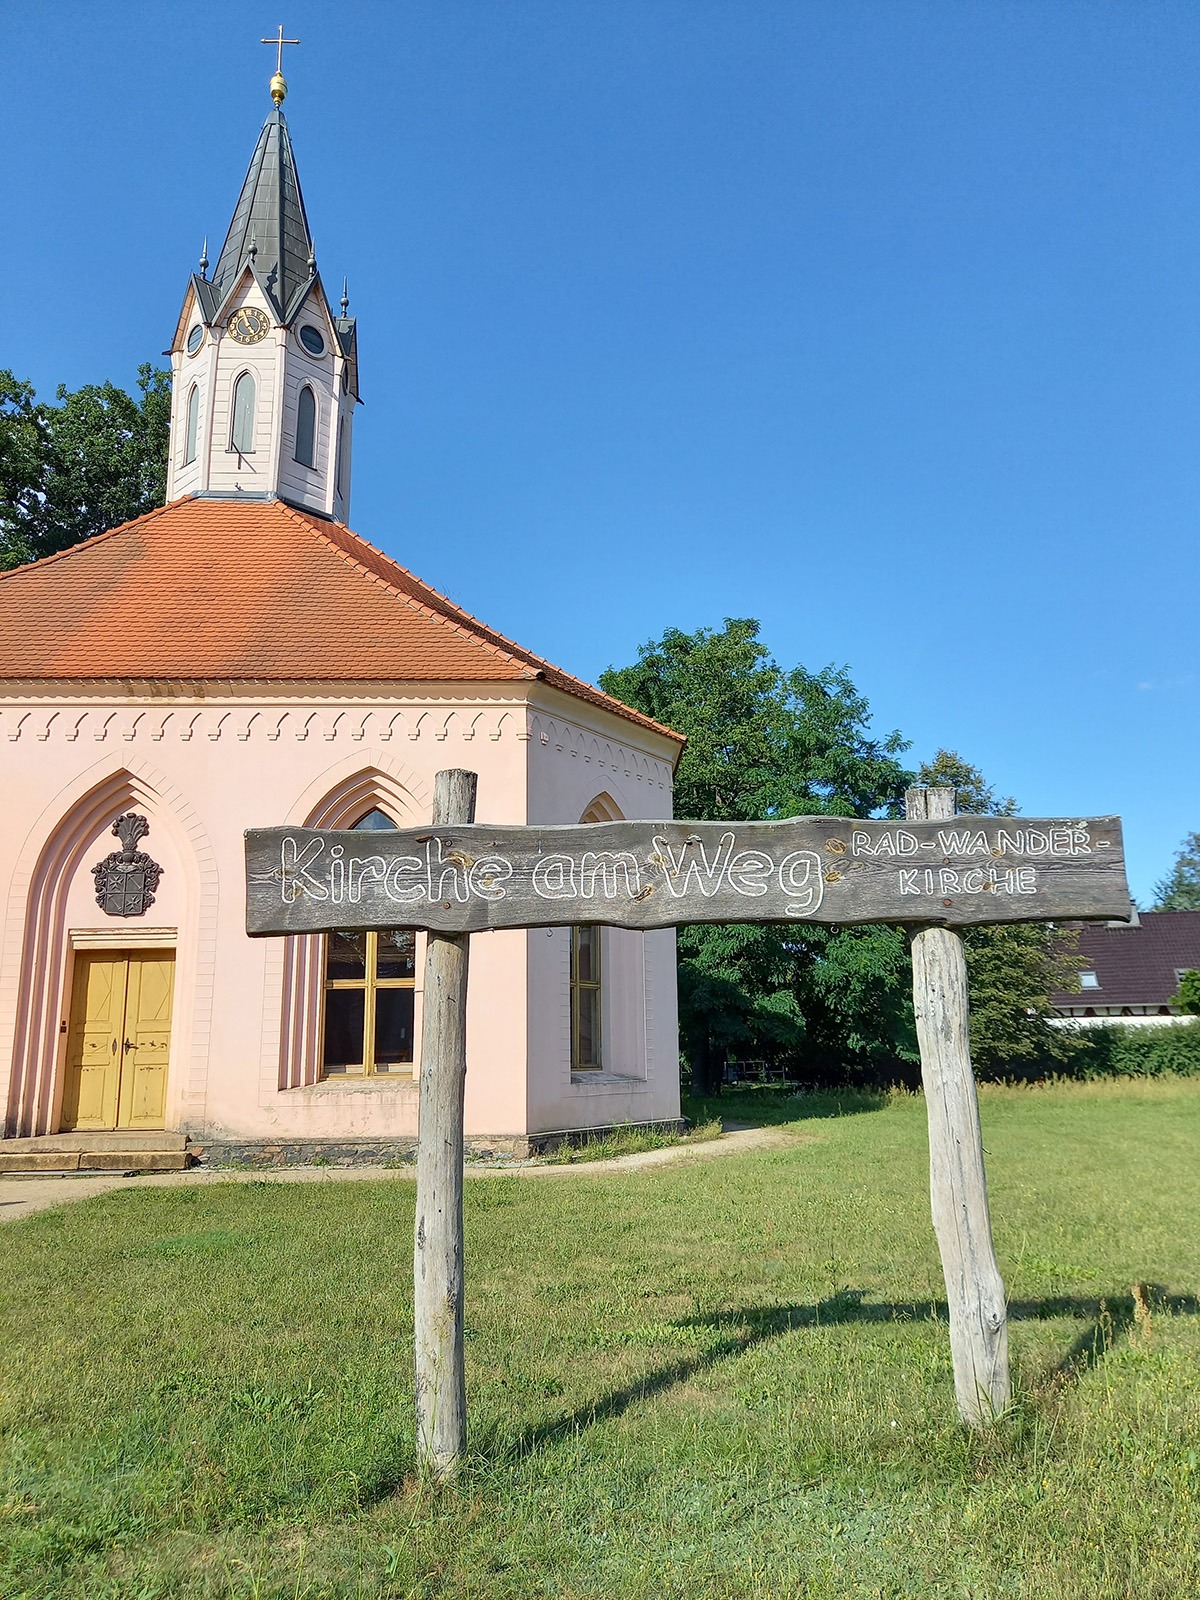 Holzschild mit der Aufschrift "Kirche am Weg" und im Hintergrund die Rad-Wander-Kirche